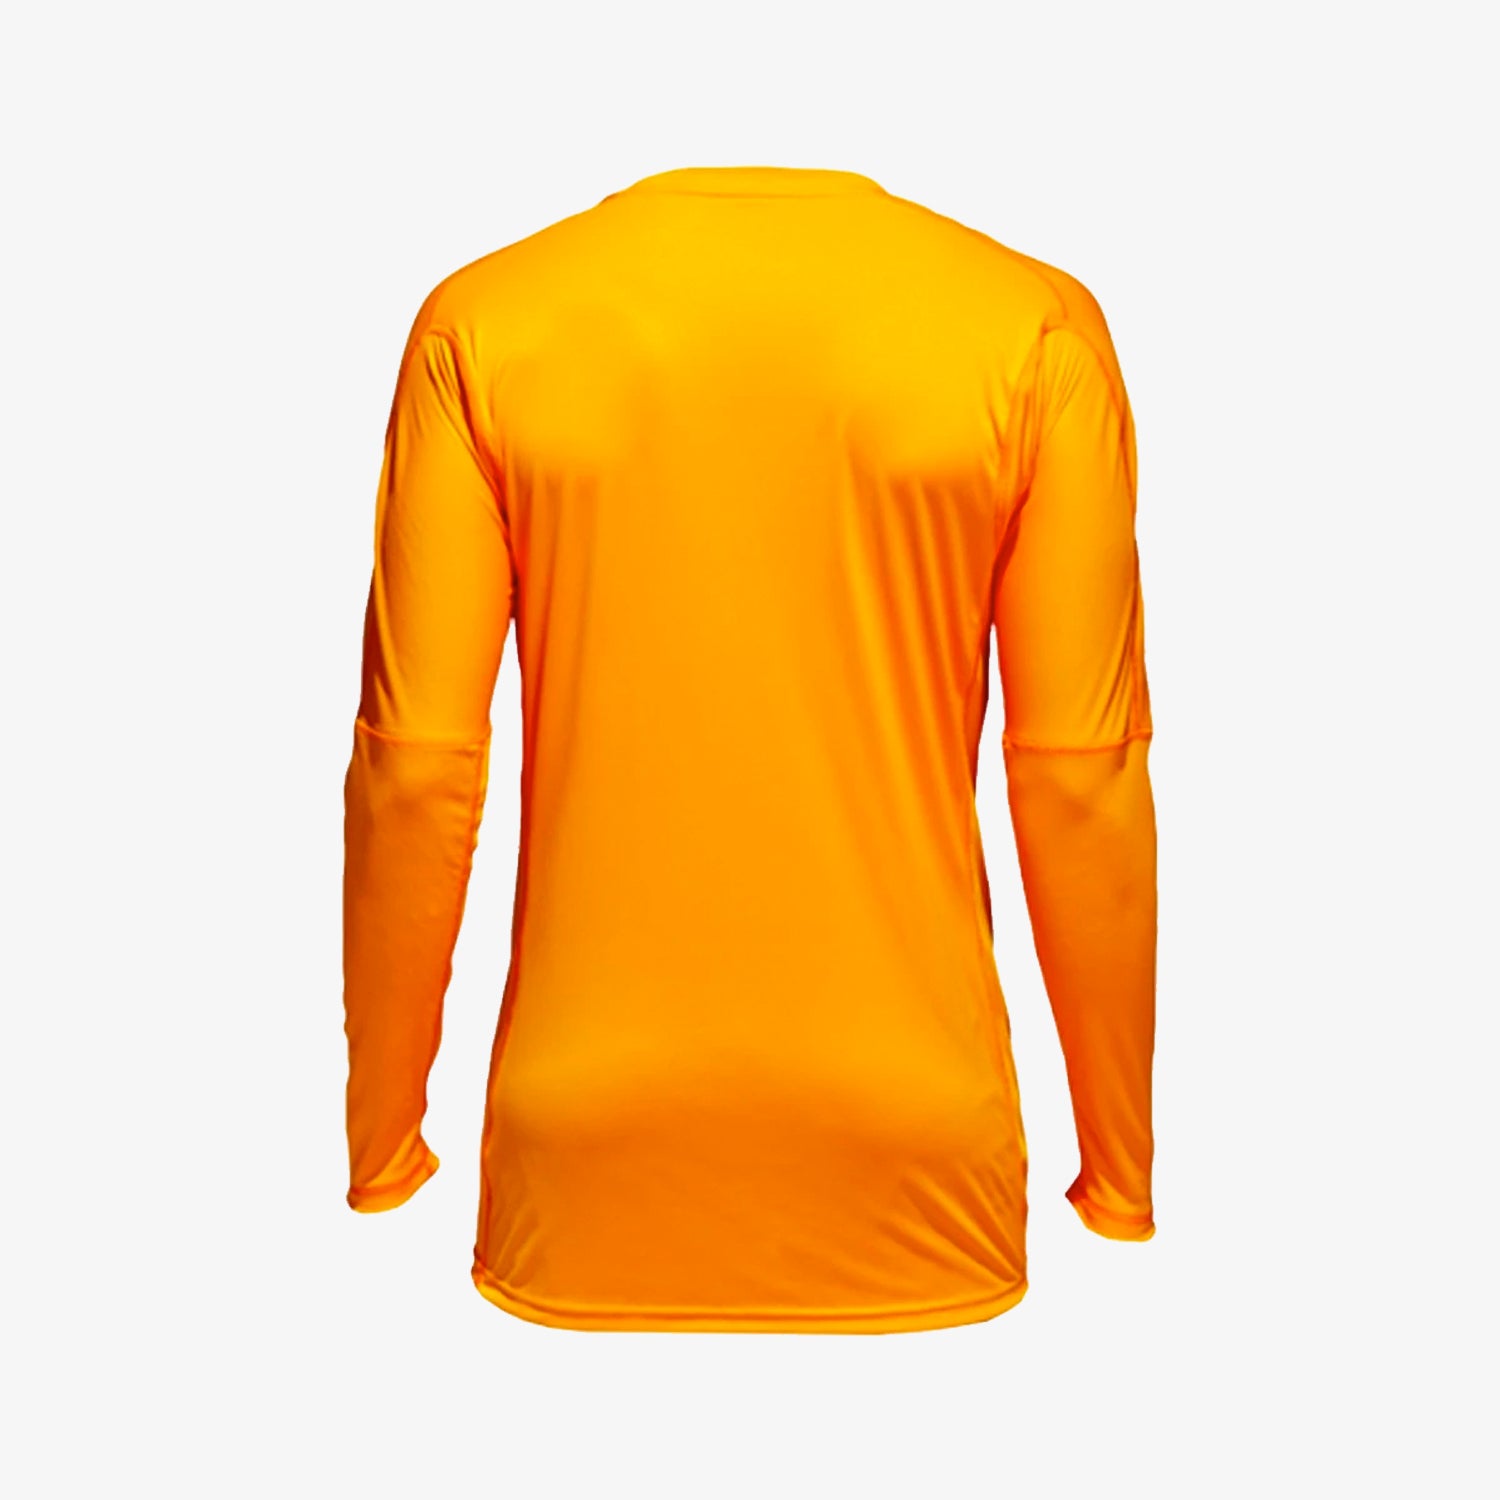 eenheid Sociale wetenschappen nationale vlag Men's Adipro 18 Goalkeeper Jersey - Lucky Orange